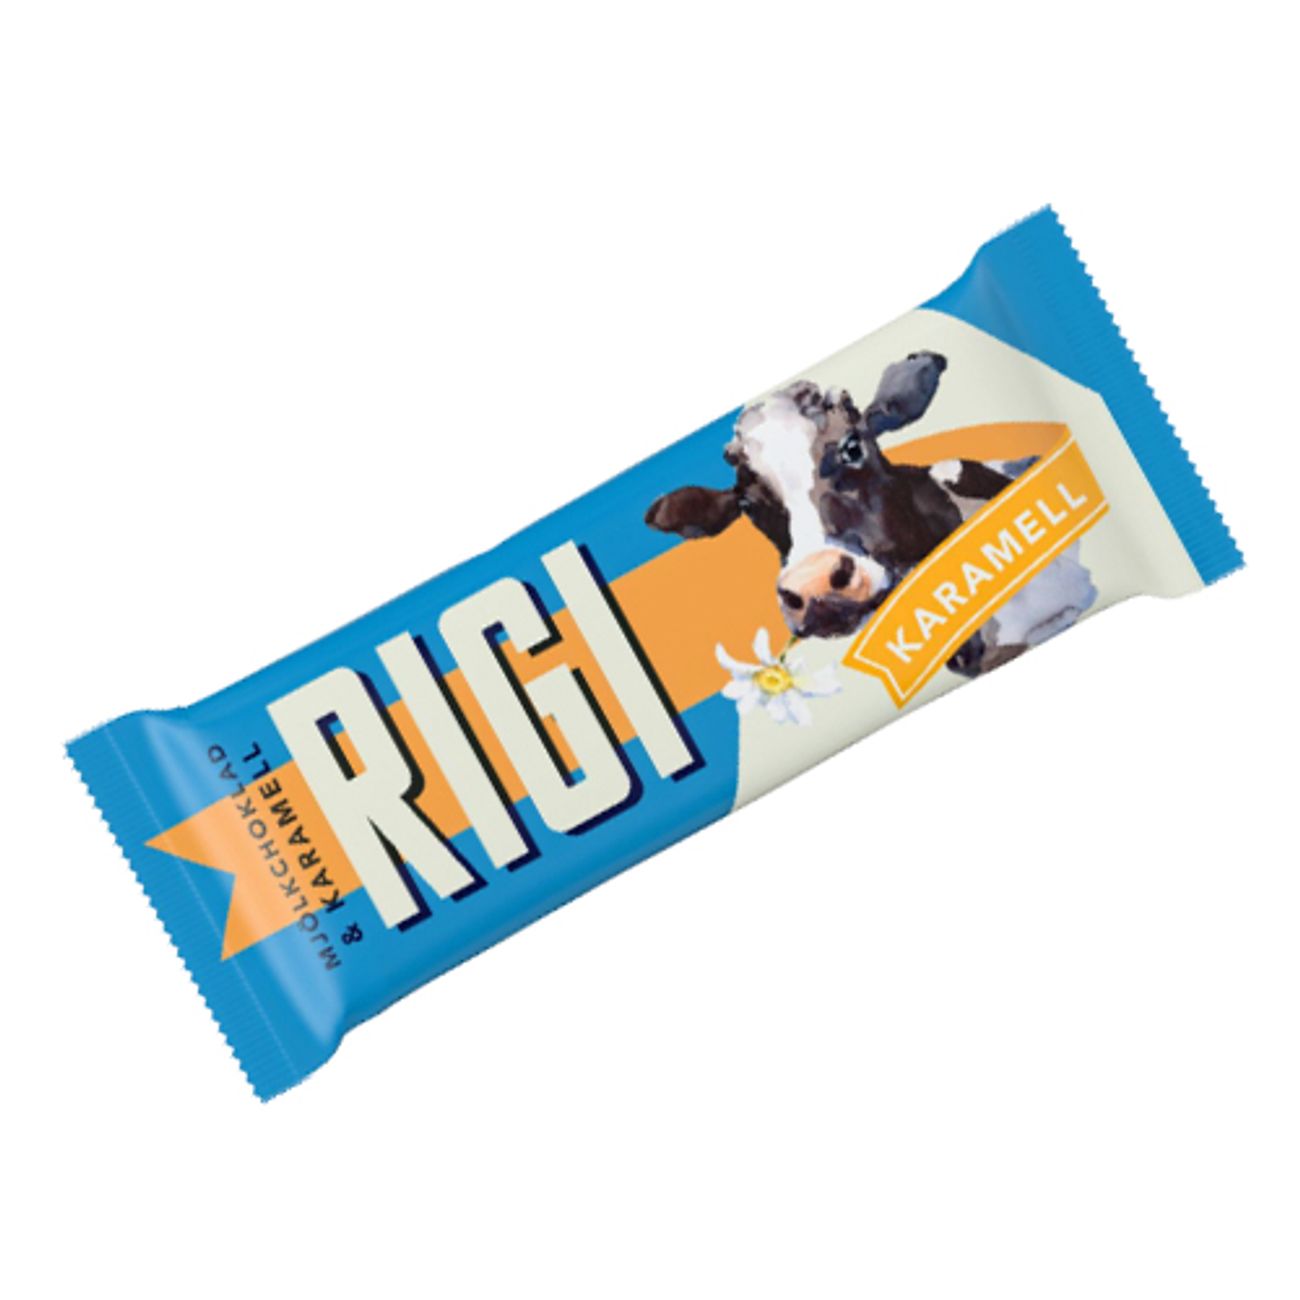 rigi-karamell-chokladbit-73958-2